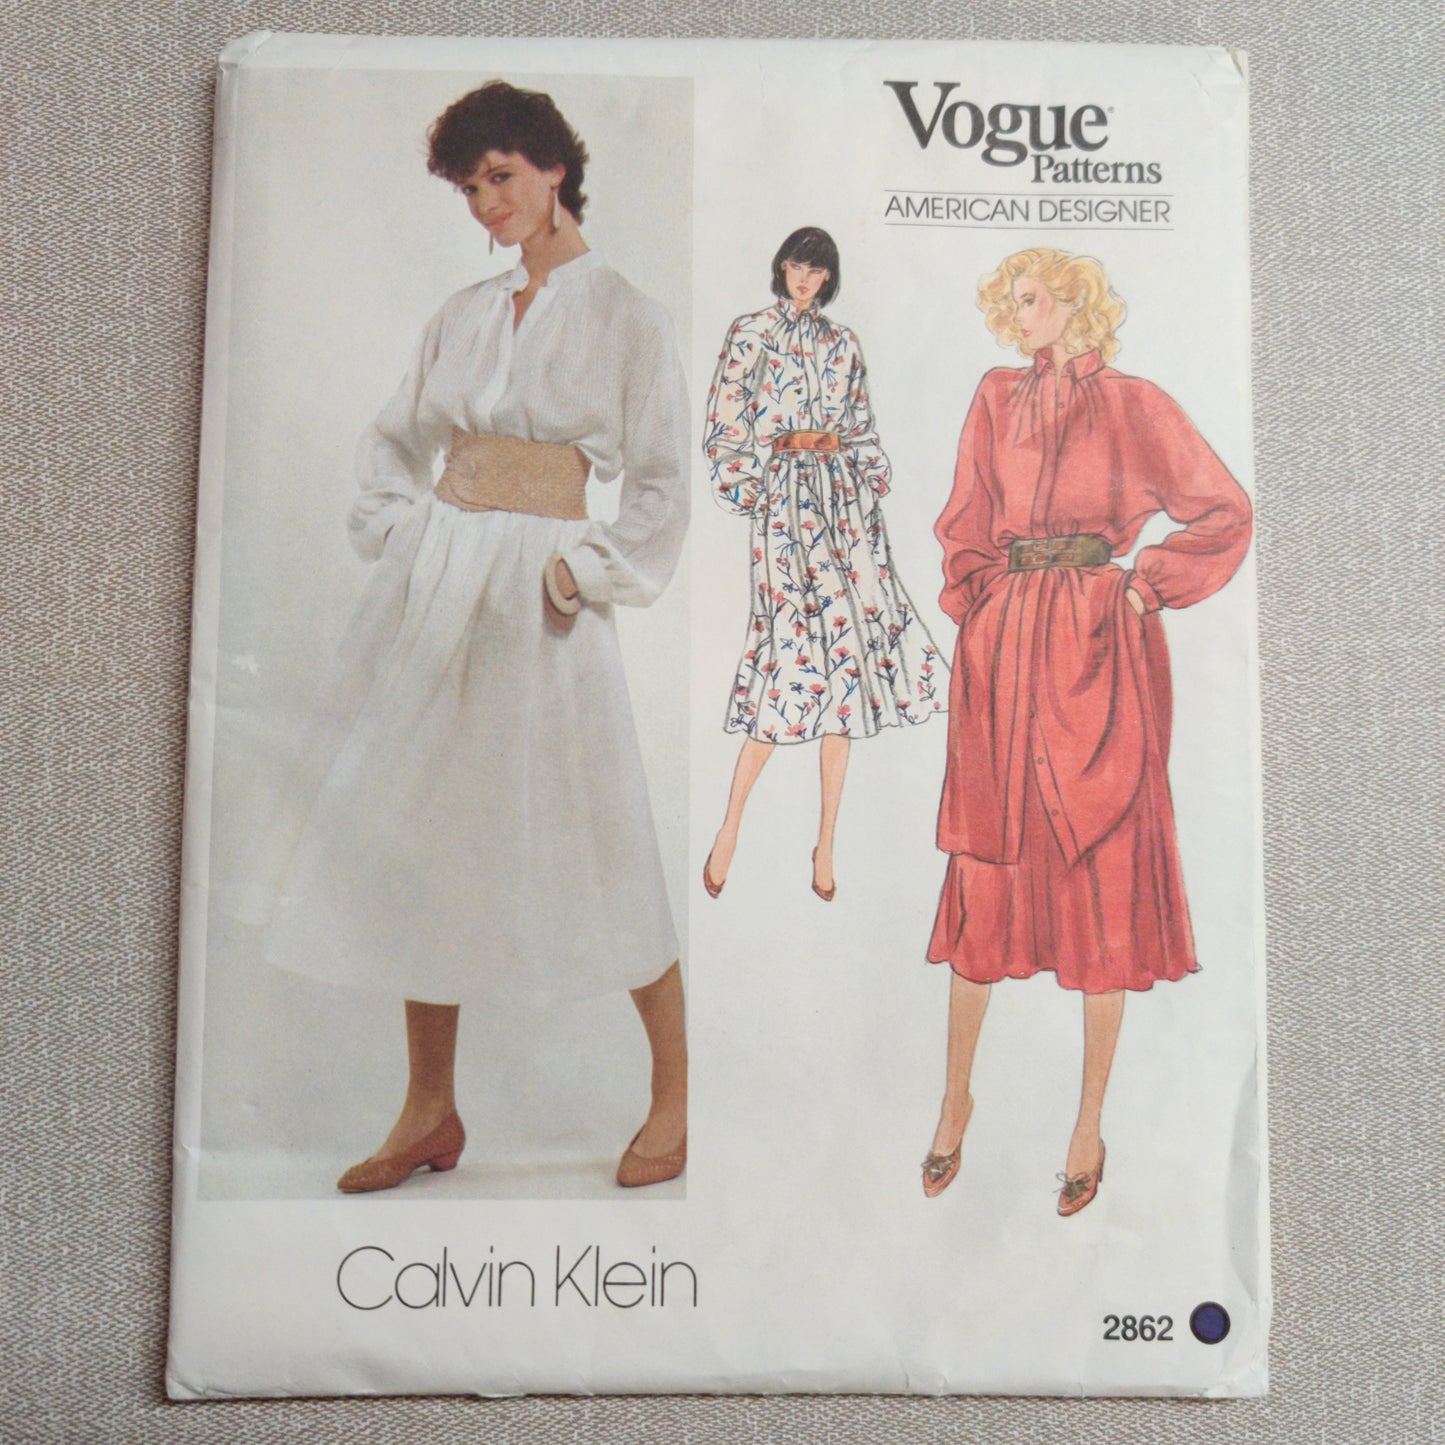 Vogue 2862 Calvin Klein Size 8